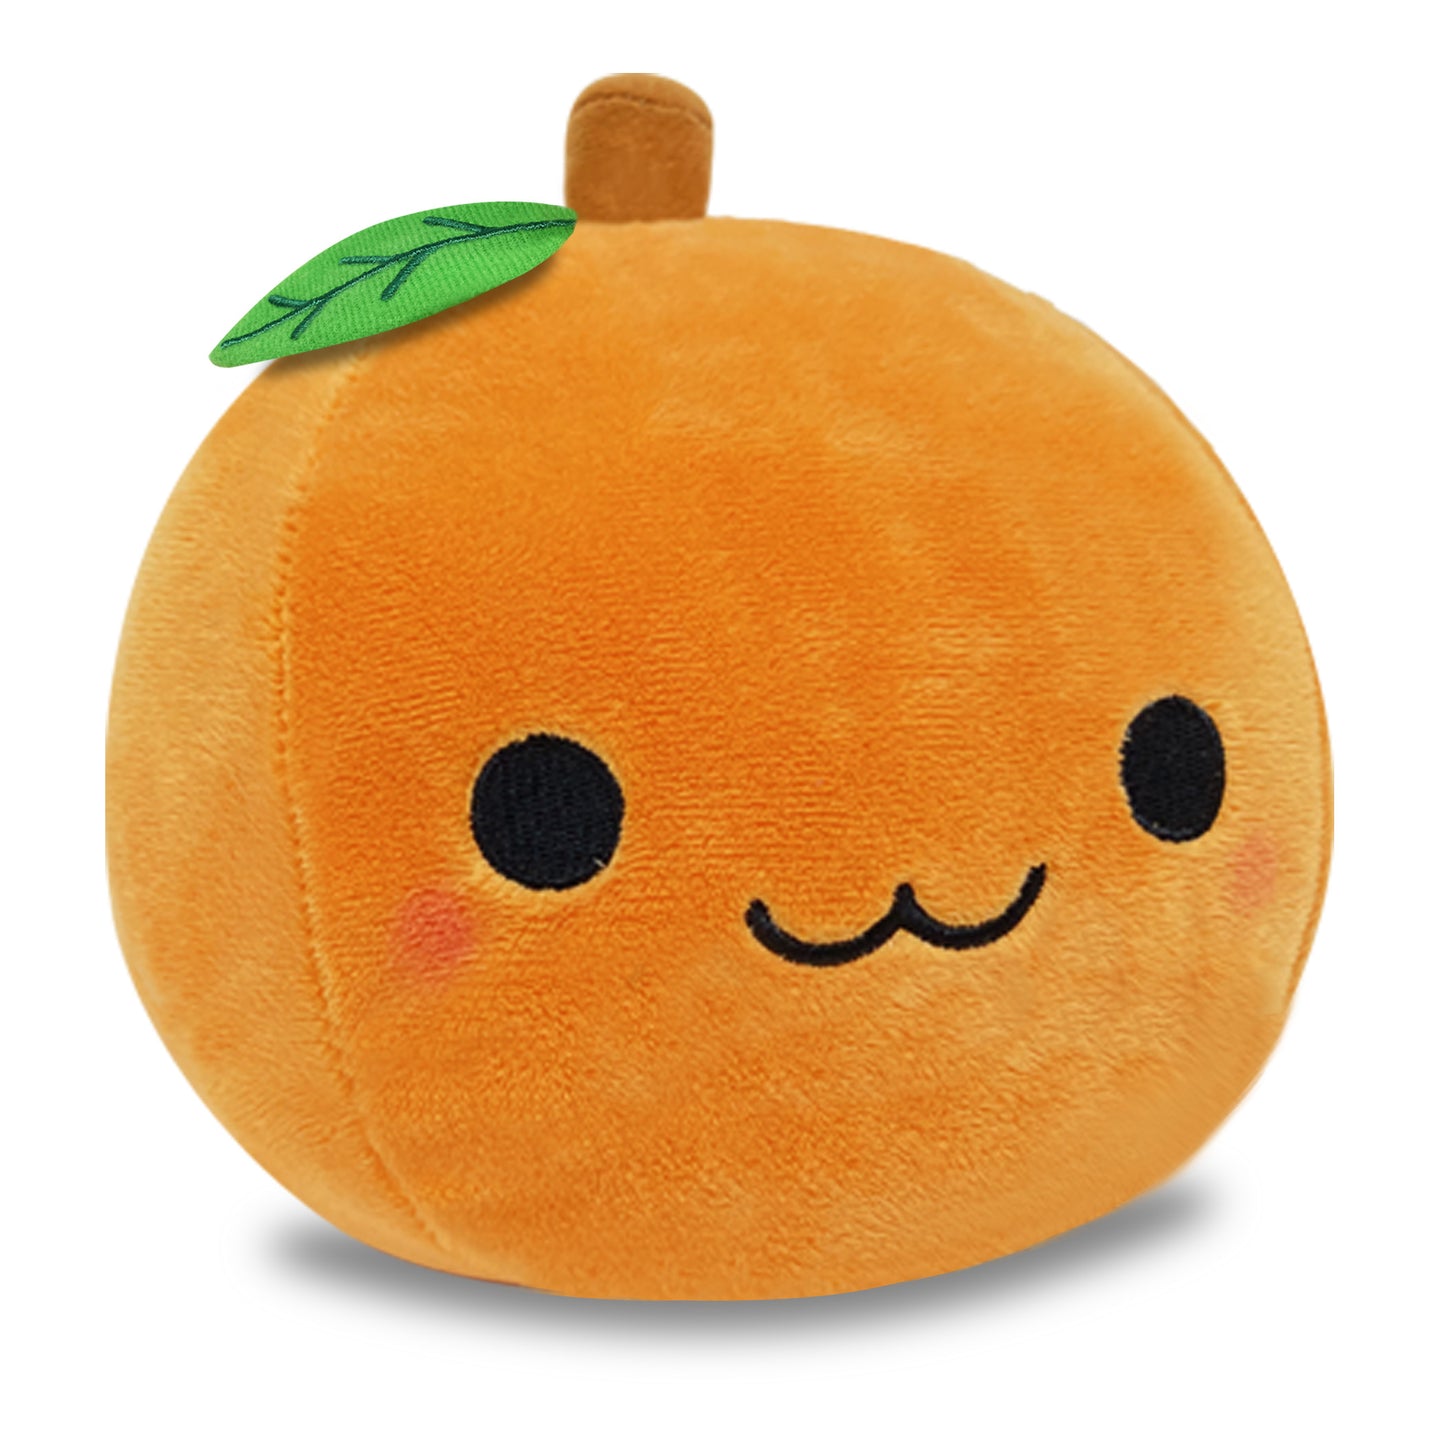 Product image of Orange Fruit Stuffed Toy Mikanchan Orange